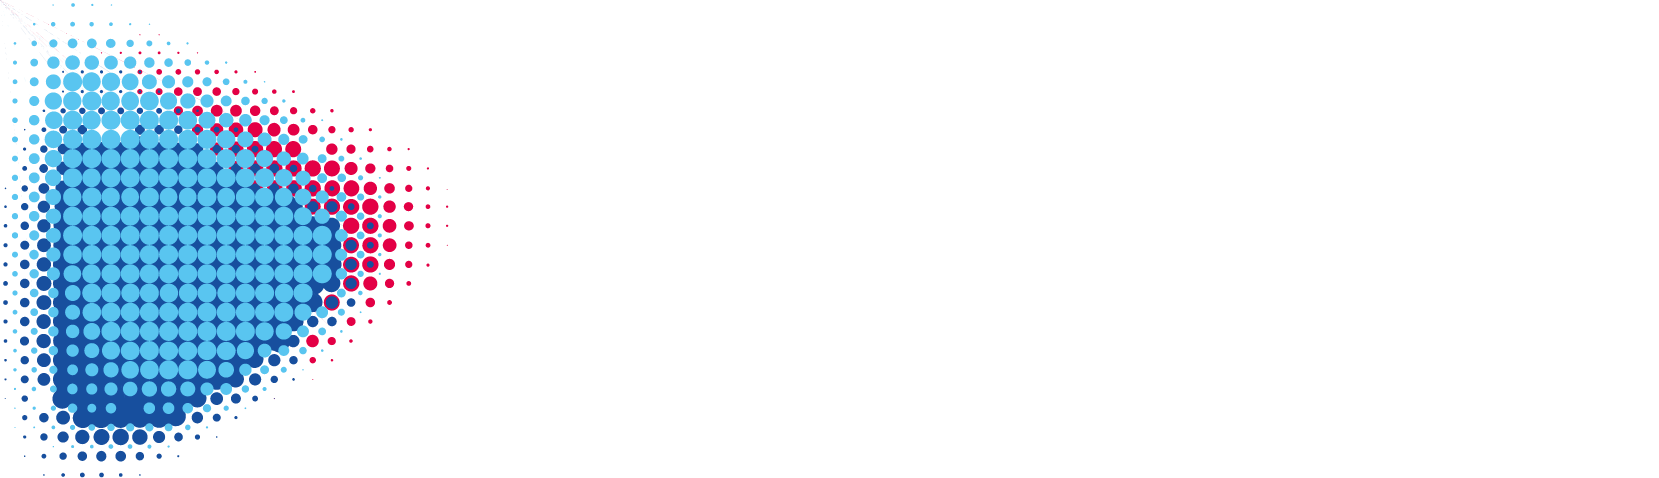 Novatek logo large for dark backgrounds (transparent PNG)